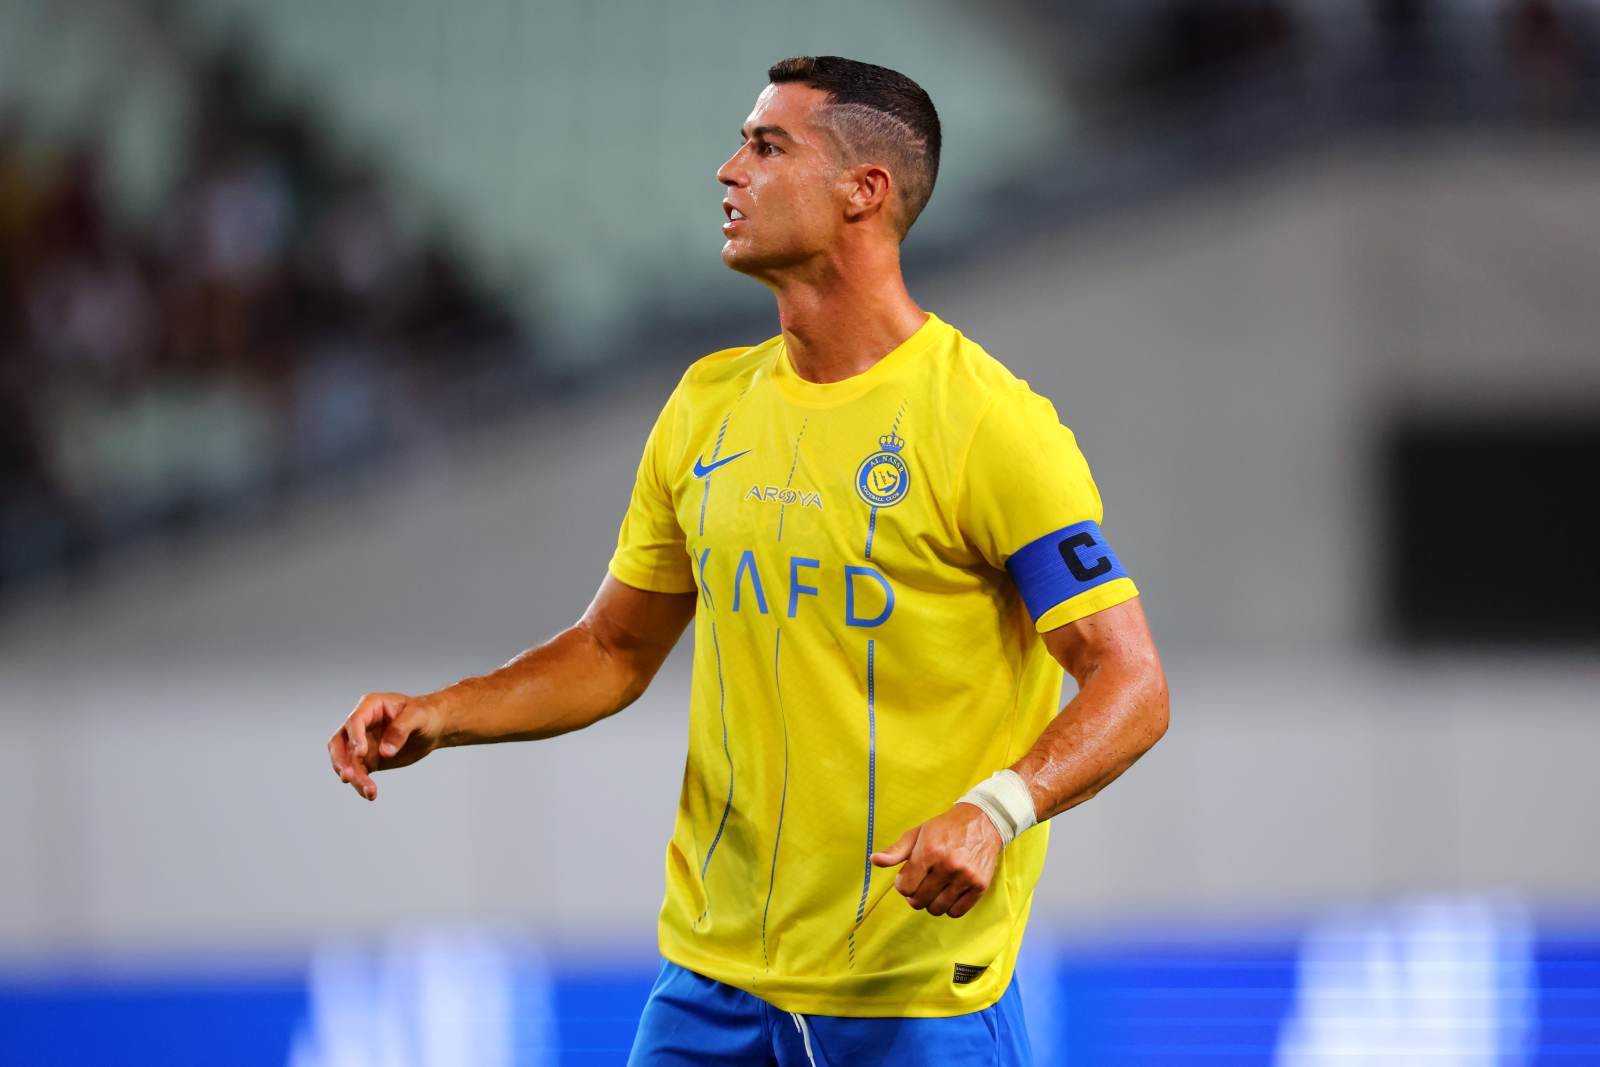 Роналду без гола и удаление Лапорта: «Аль-Наср» съездил за поражением к «Аль-Айну»